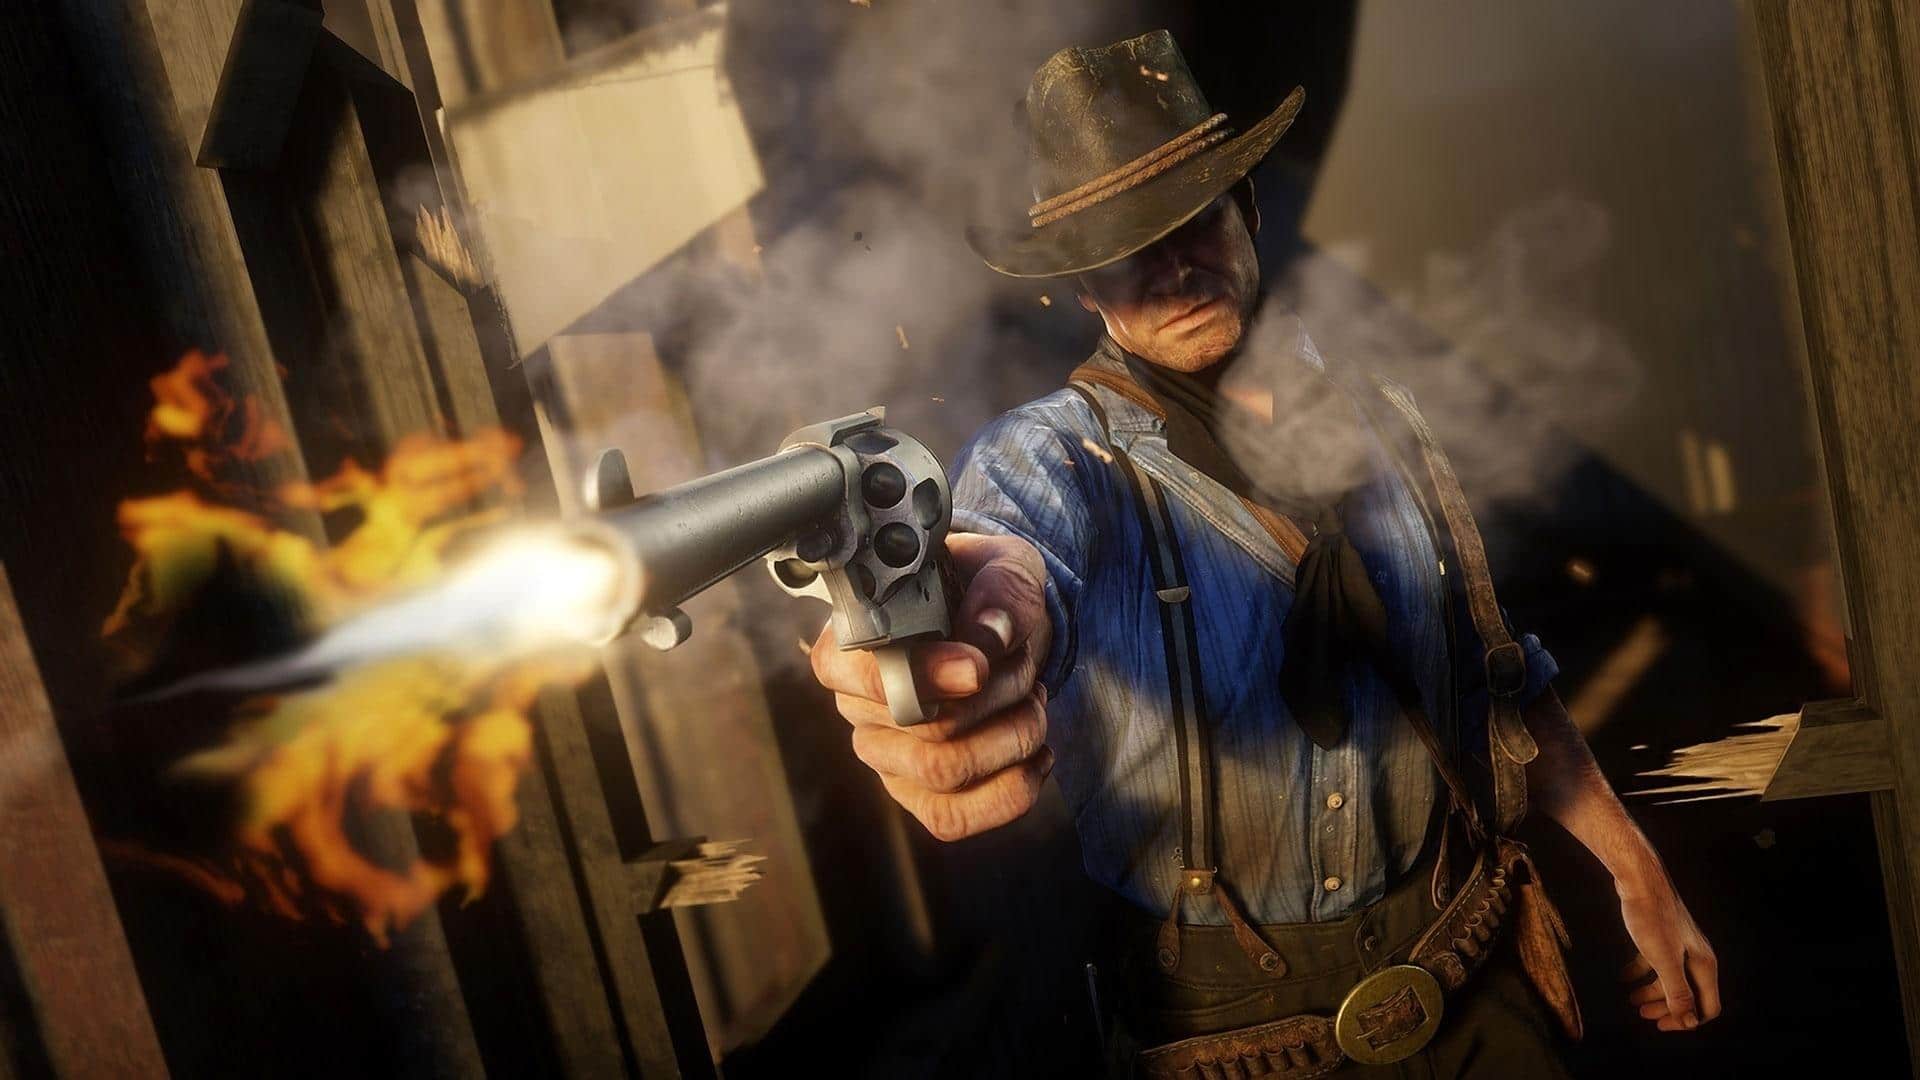 Red Dead Redemption 2: conheça o mapa, e veja como viajar rápido